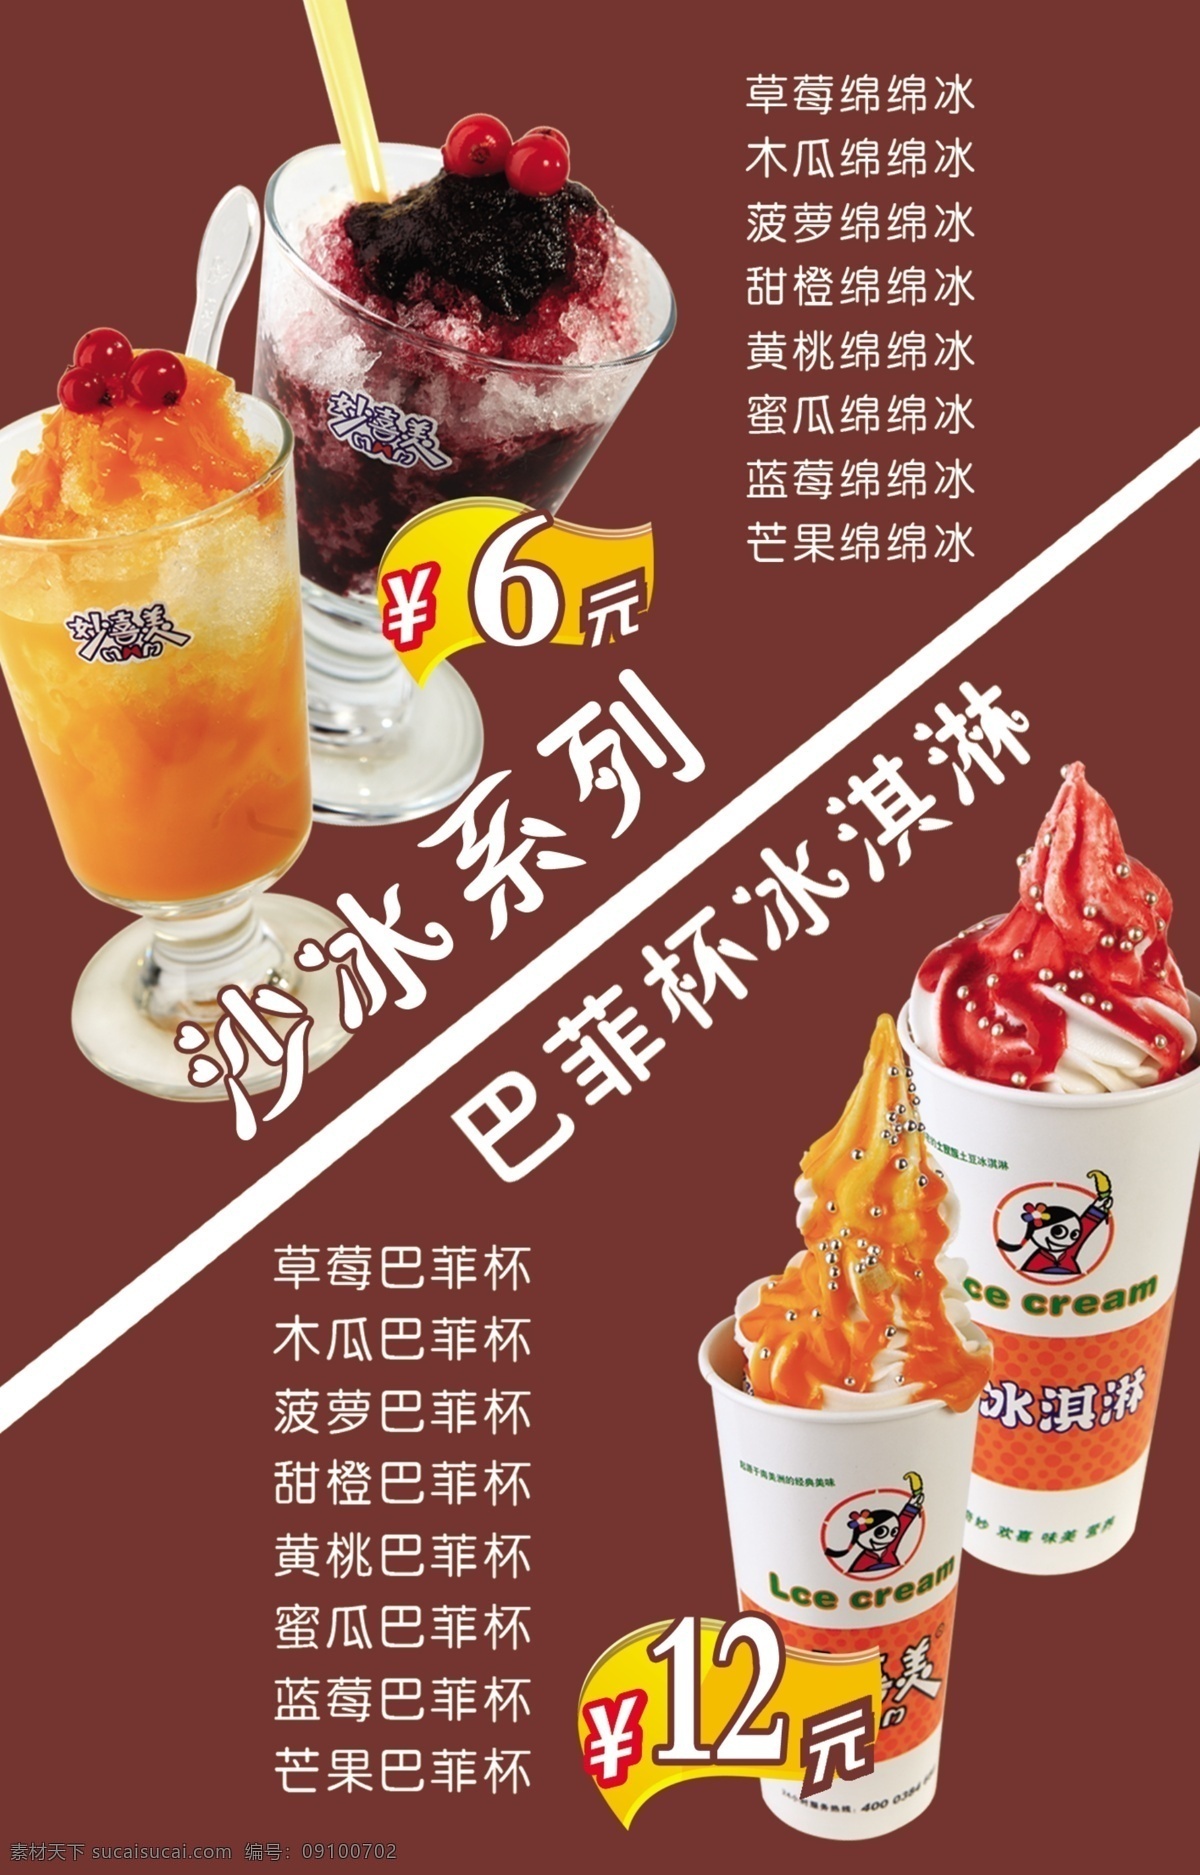 巴菲杯冰淇淋 冰沙免费下载 psd源文件 餐饮素材